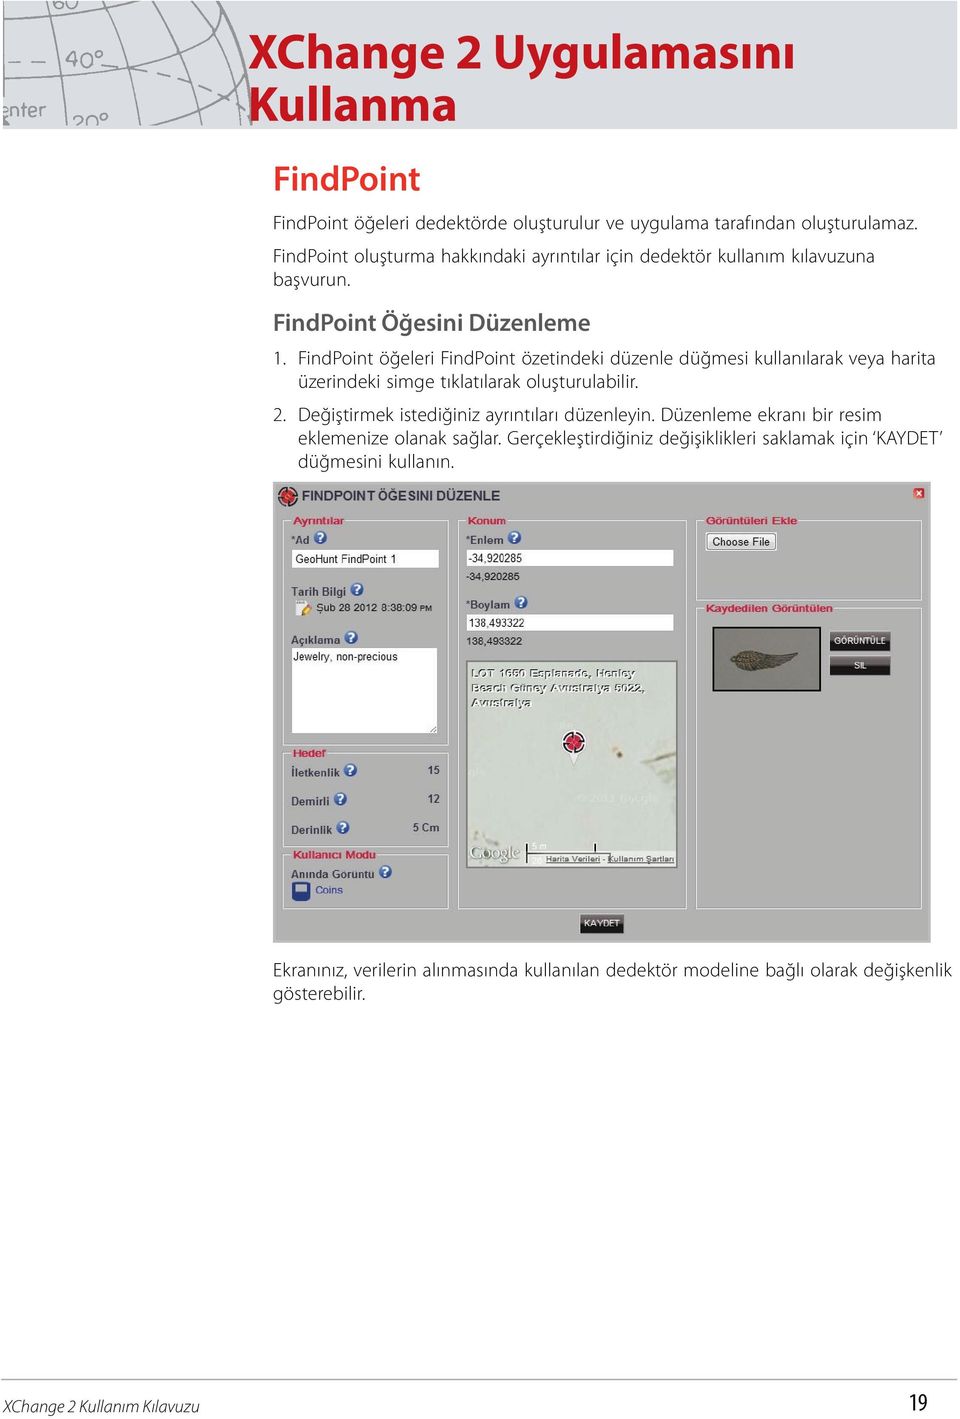 FindPoint öğeleri FindPoint özetindeki düzenle düğmesi kullanılarak veya harita üzerindeki simge tıklatılarak oluşturulabilir. 2.